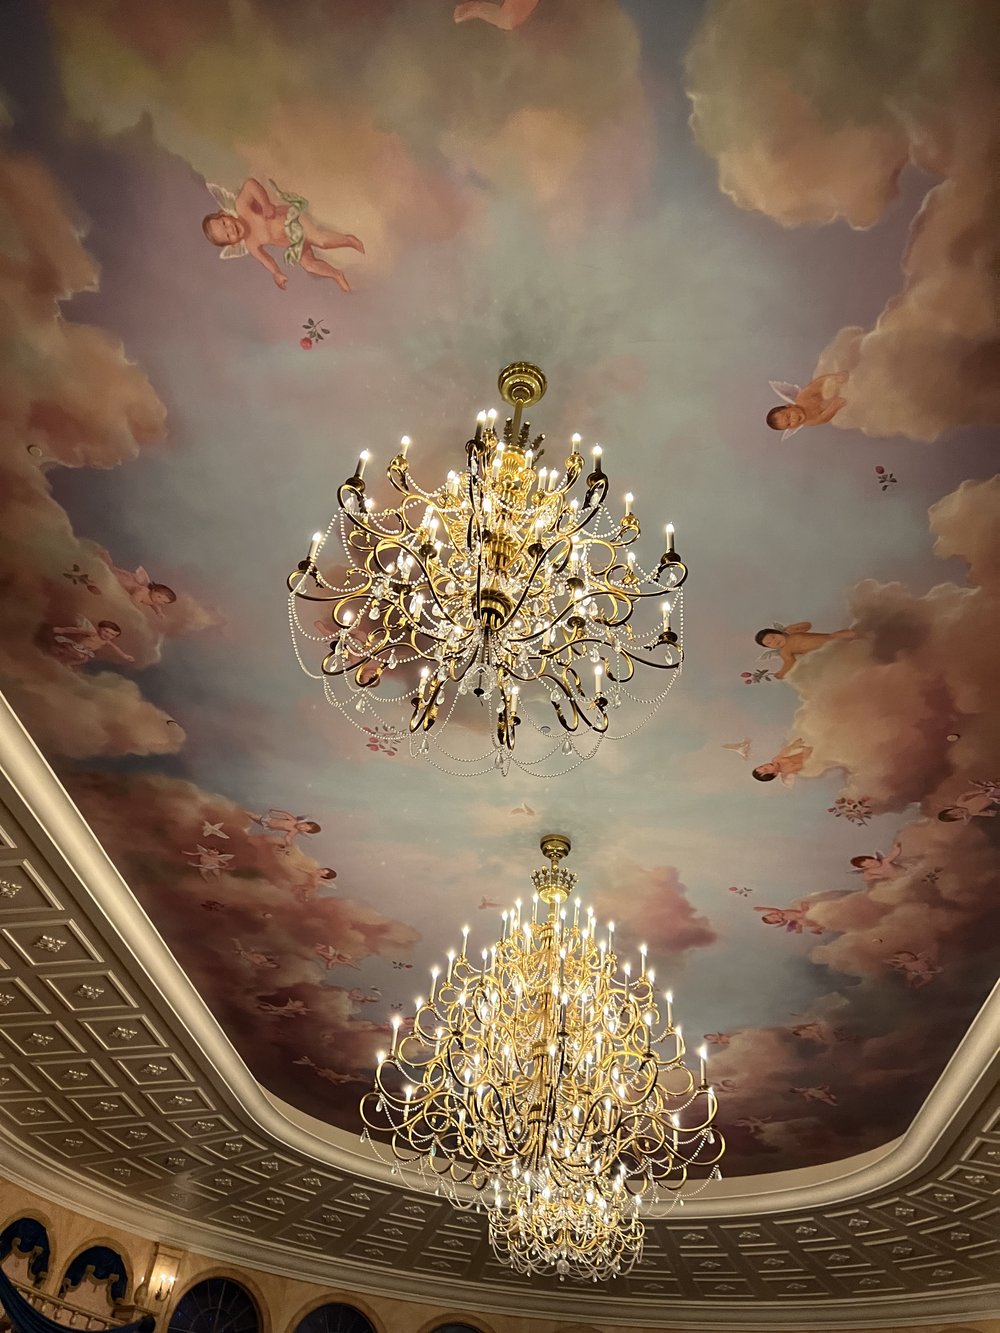 grand ballroom ceiling.jpg